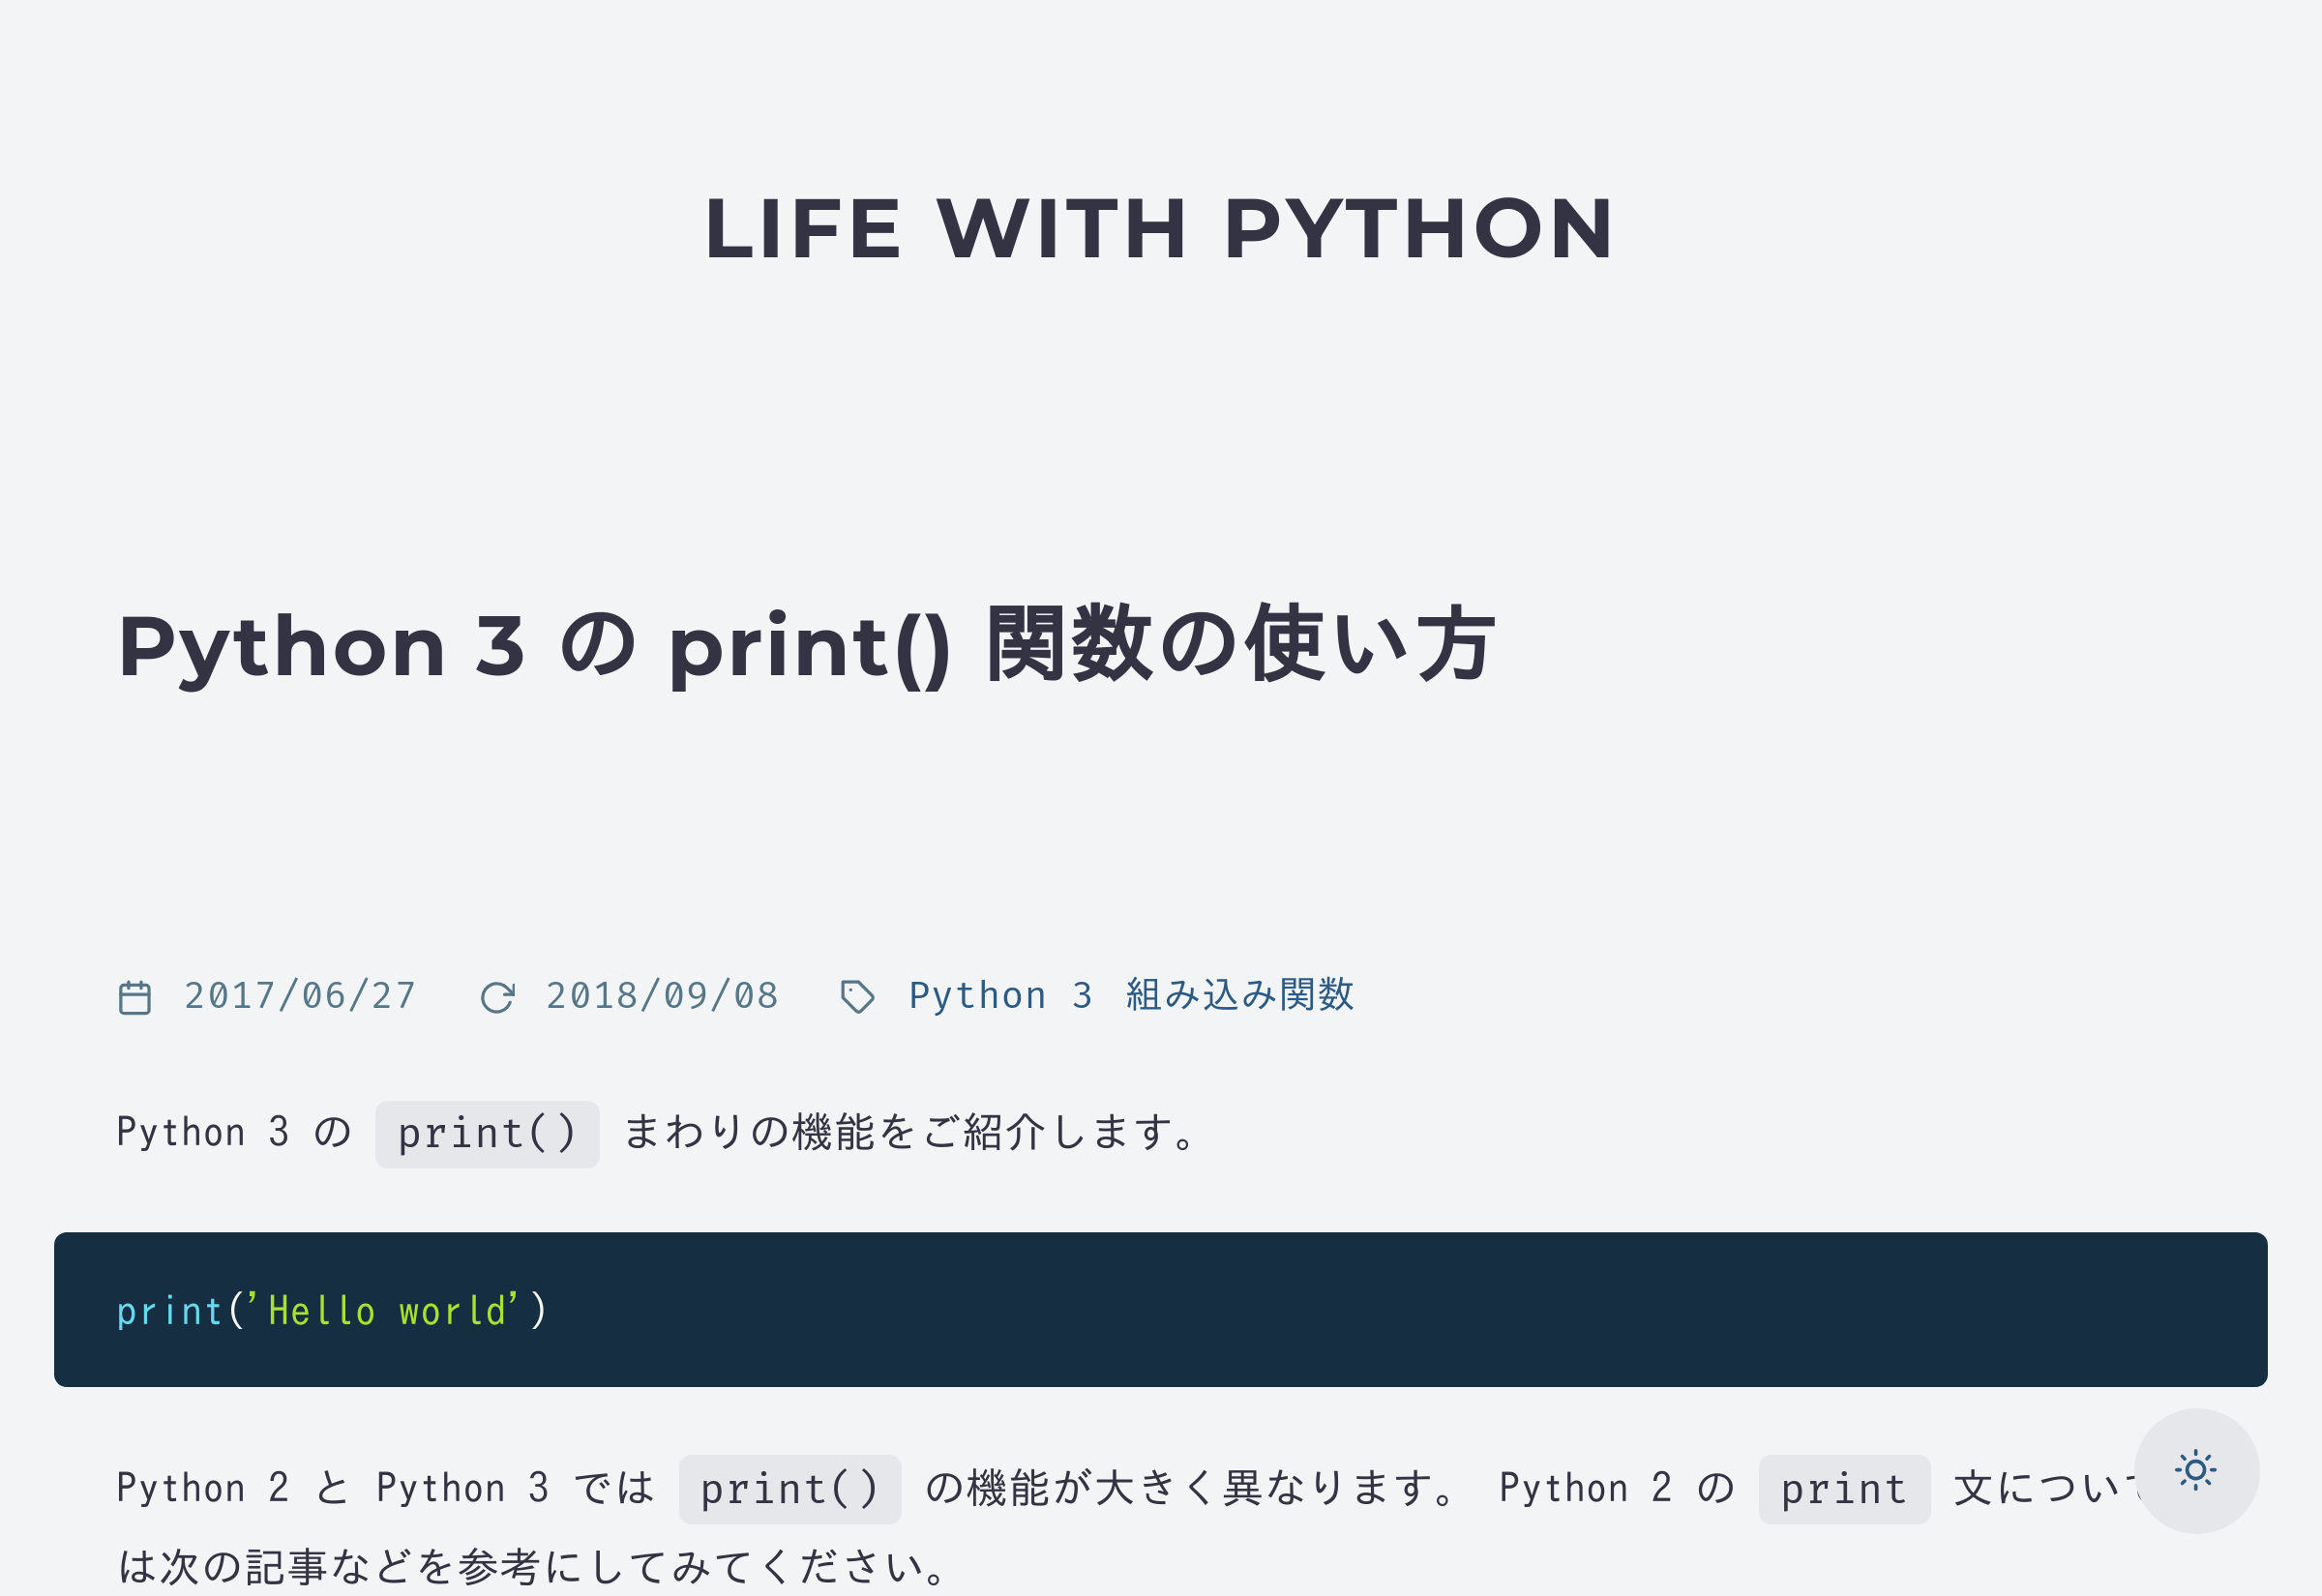 Python 3 の print() 関数の使い方 - Life with